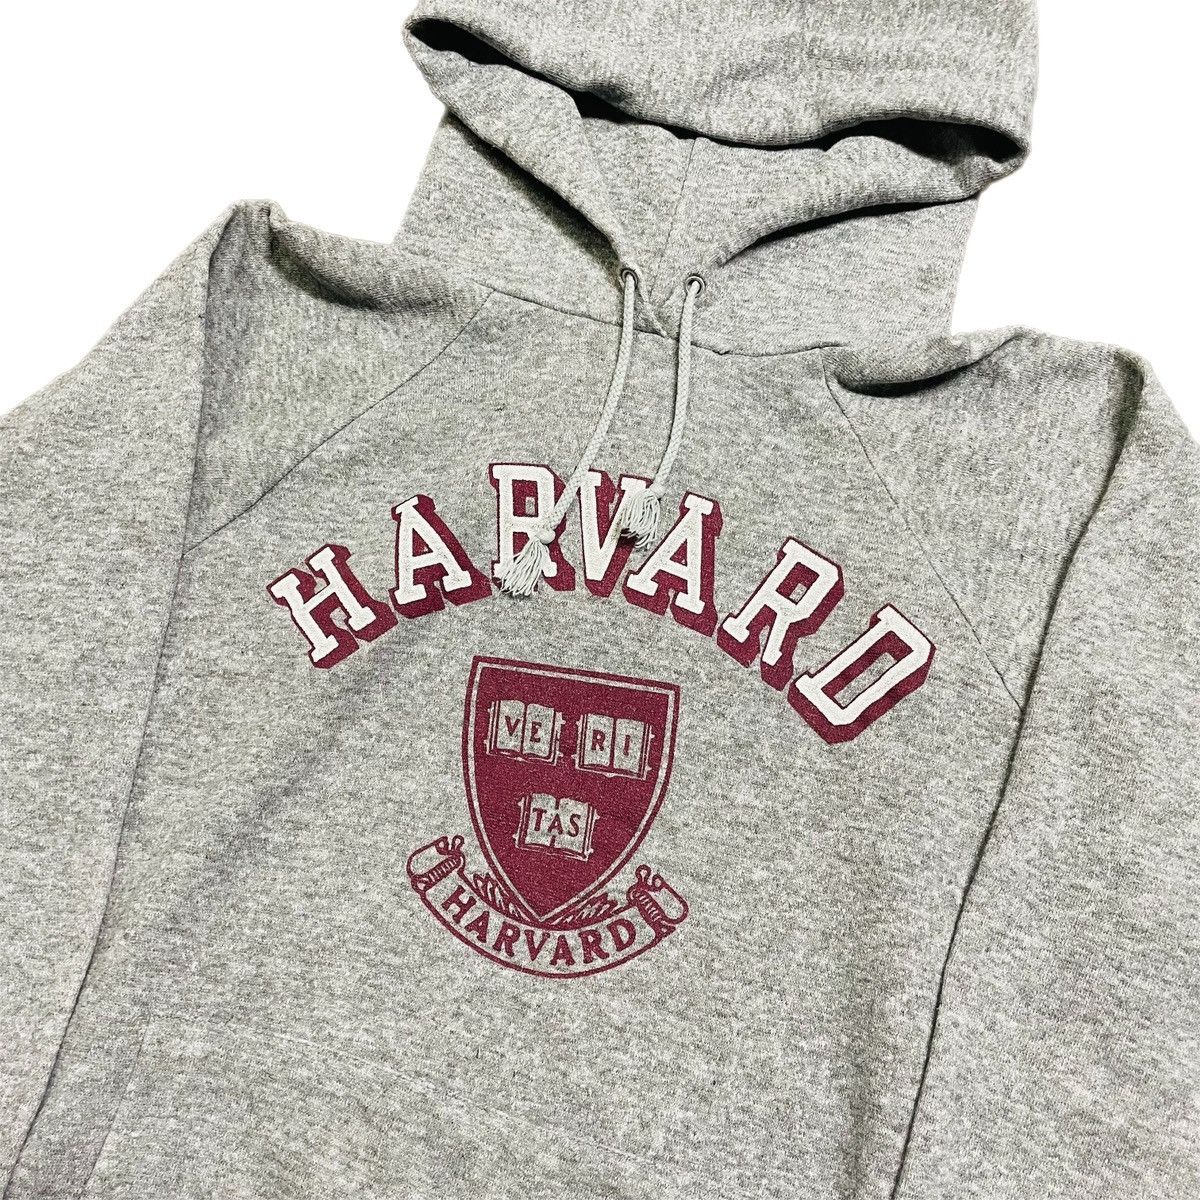 Vintage Vintage 80s Harvard University Raglan Hoodie Sweatshirt Size US M / EU 48-50 / 2 - 2 Preview